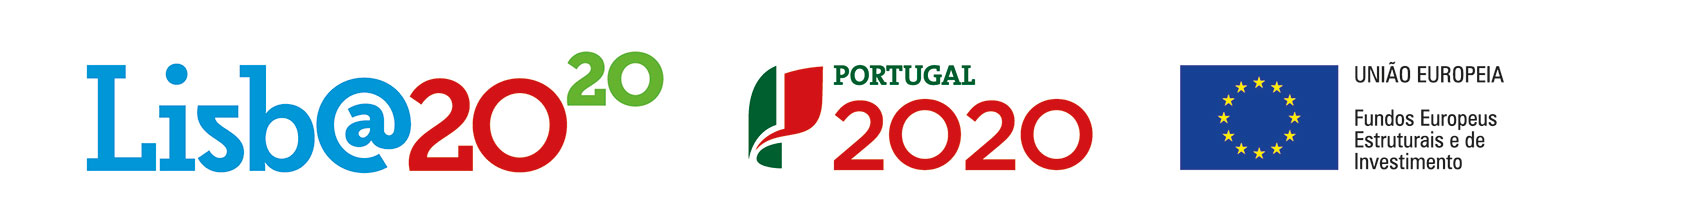 Lisbon 2020